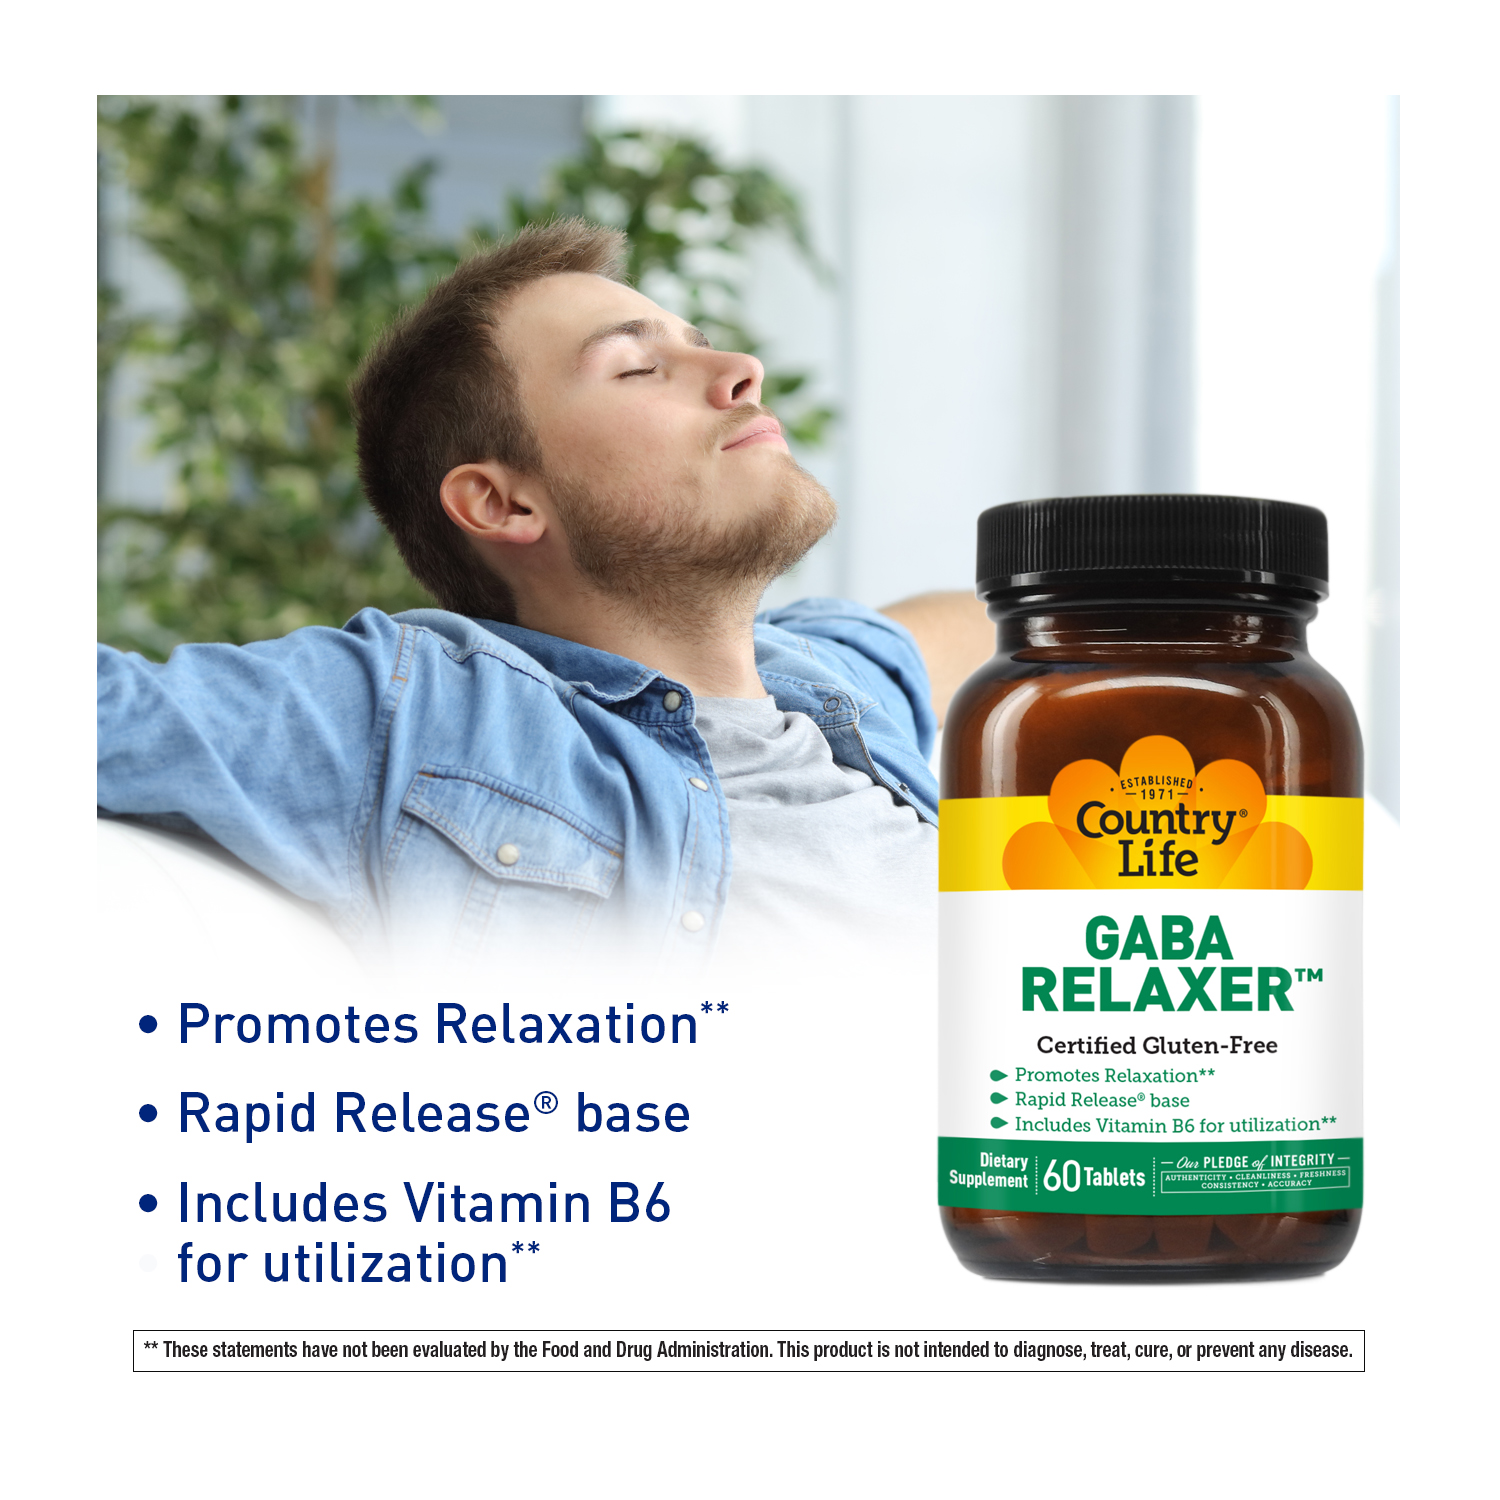 GABA Relaxer™